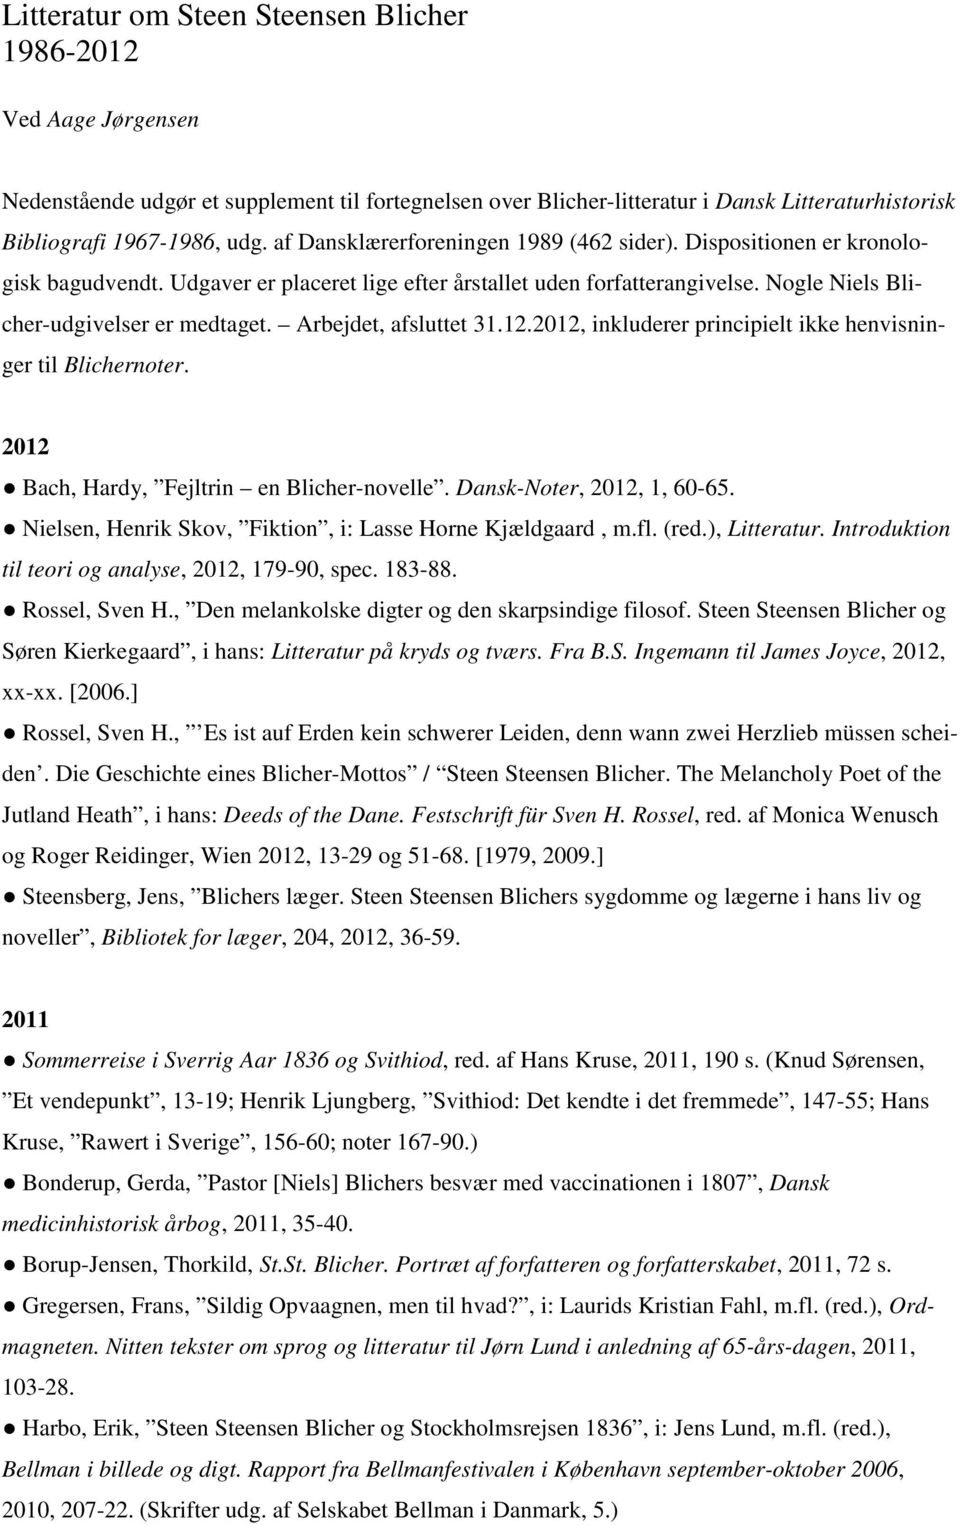 Litteratur om Steen Steensen Blicher - PDF Gratis download